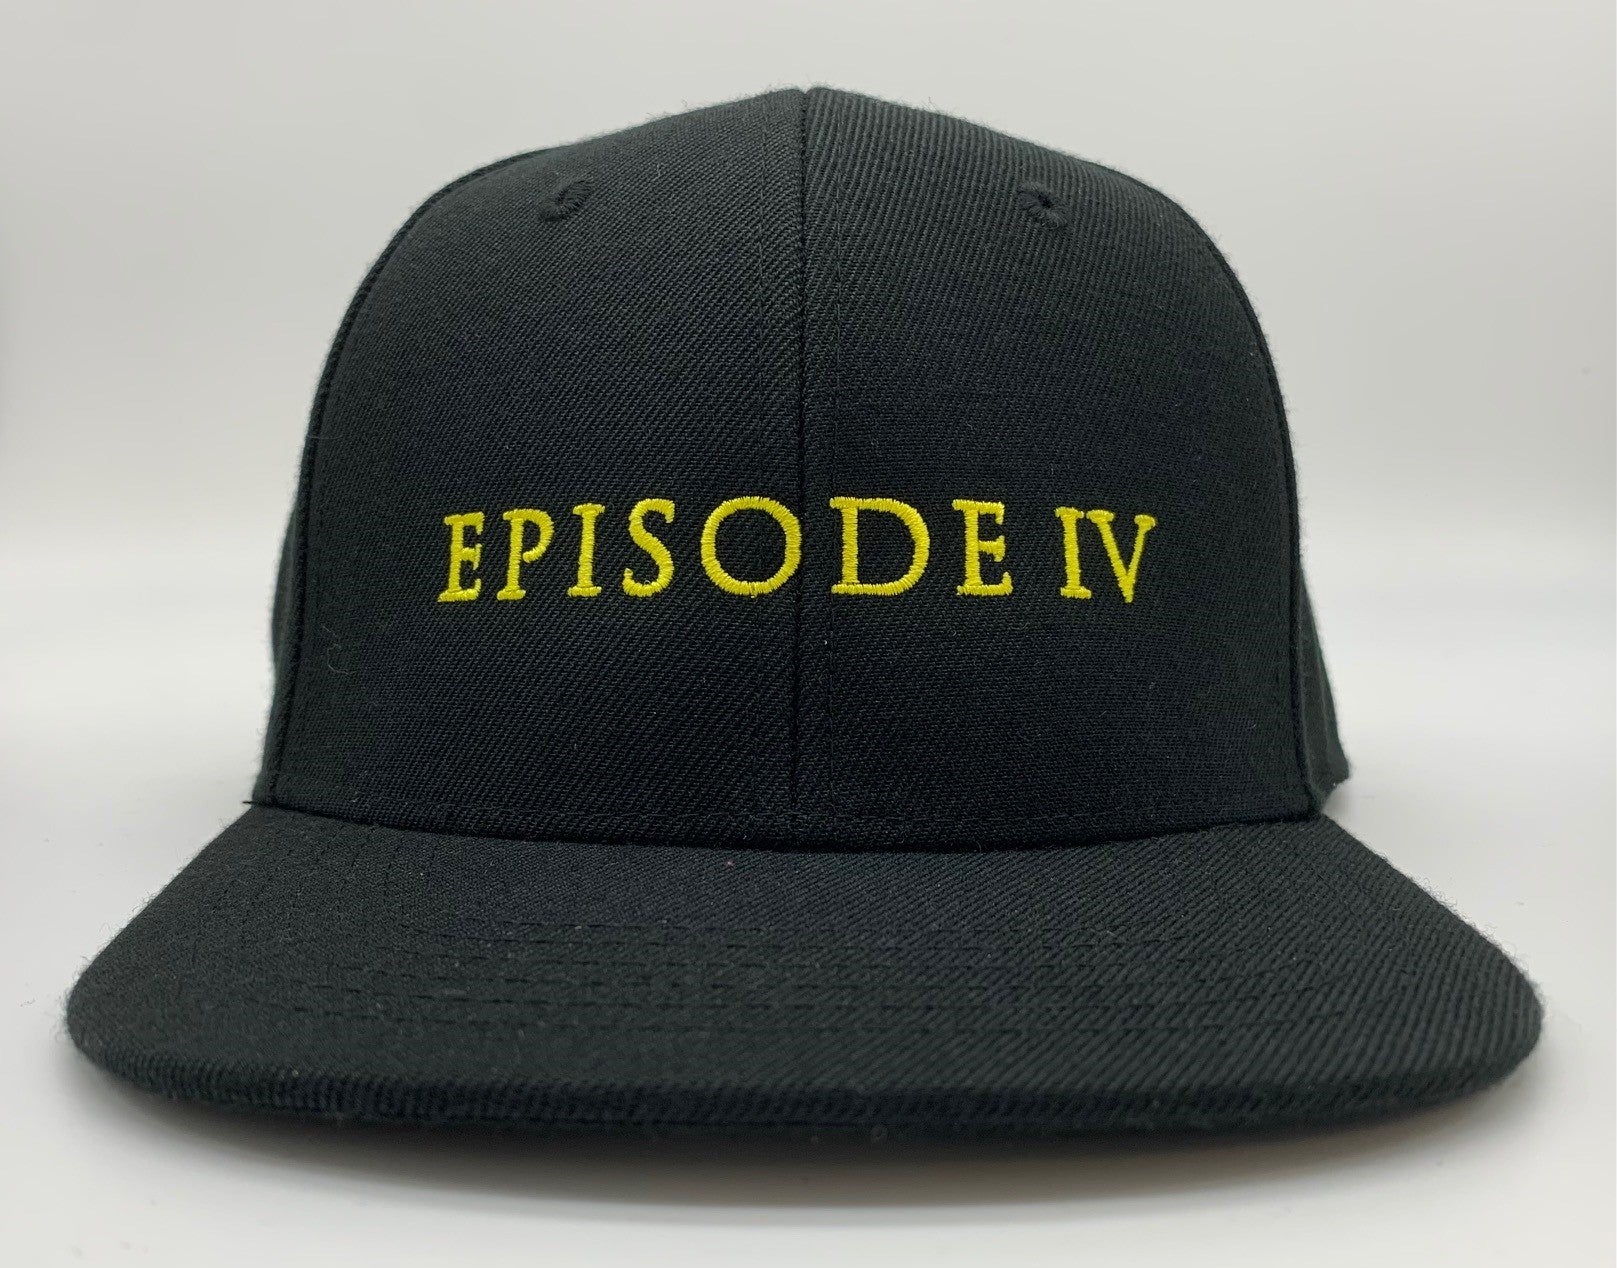 Episode IV Flatbill Snapback Hat